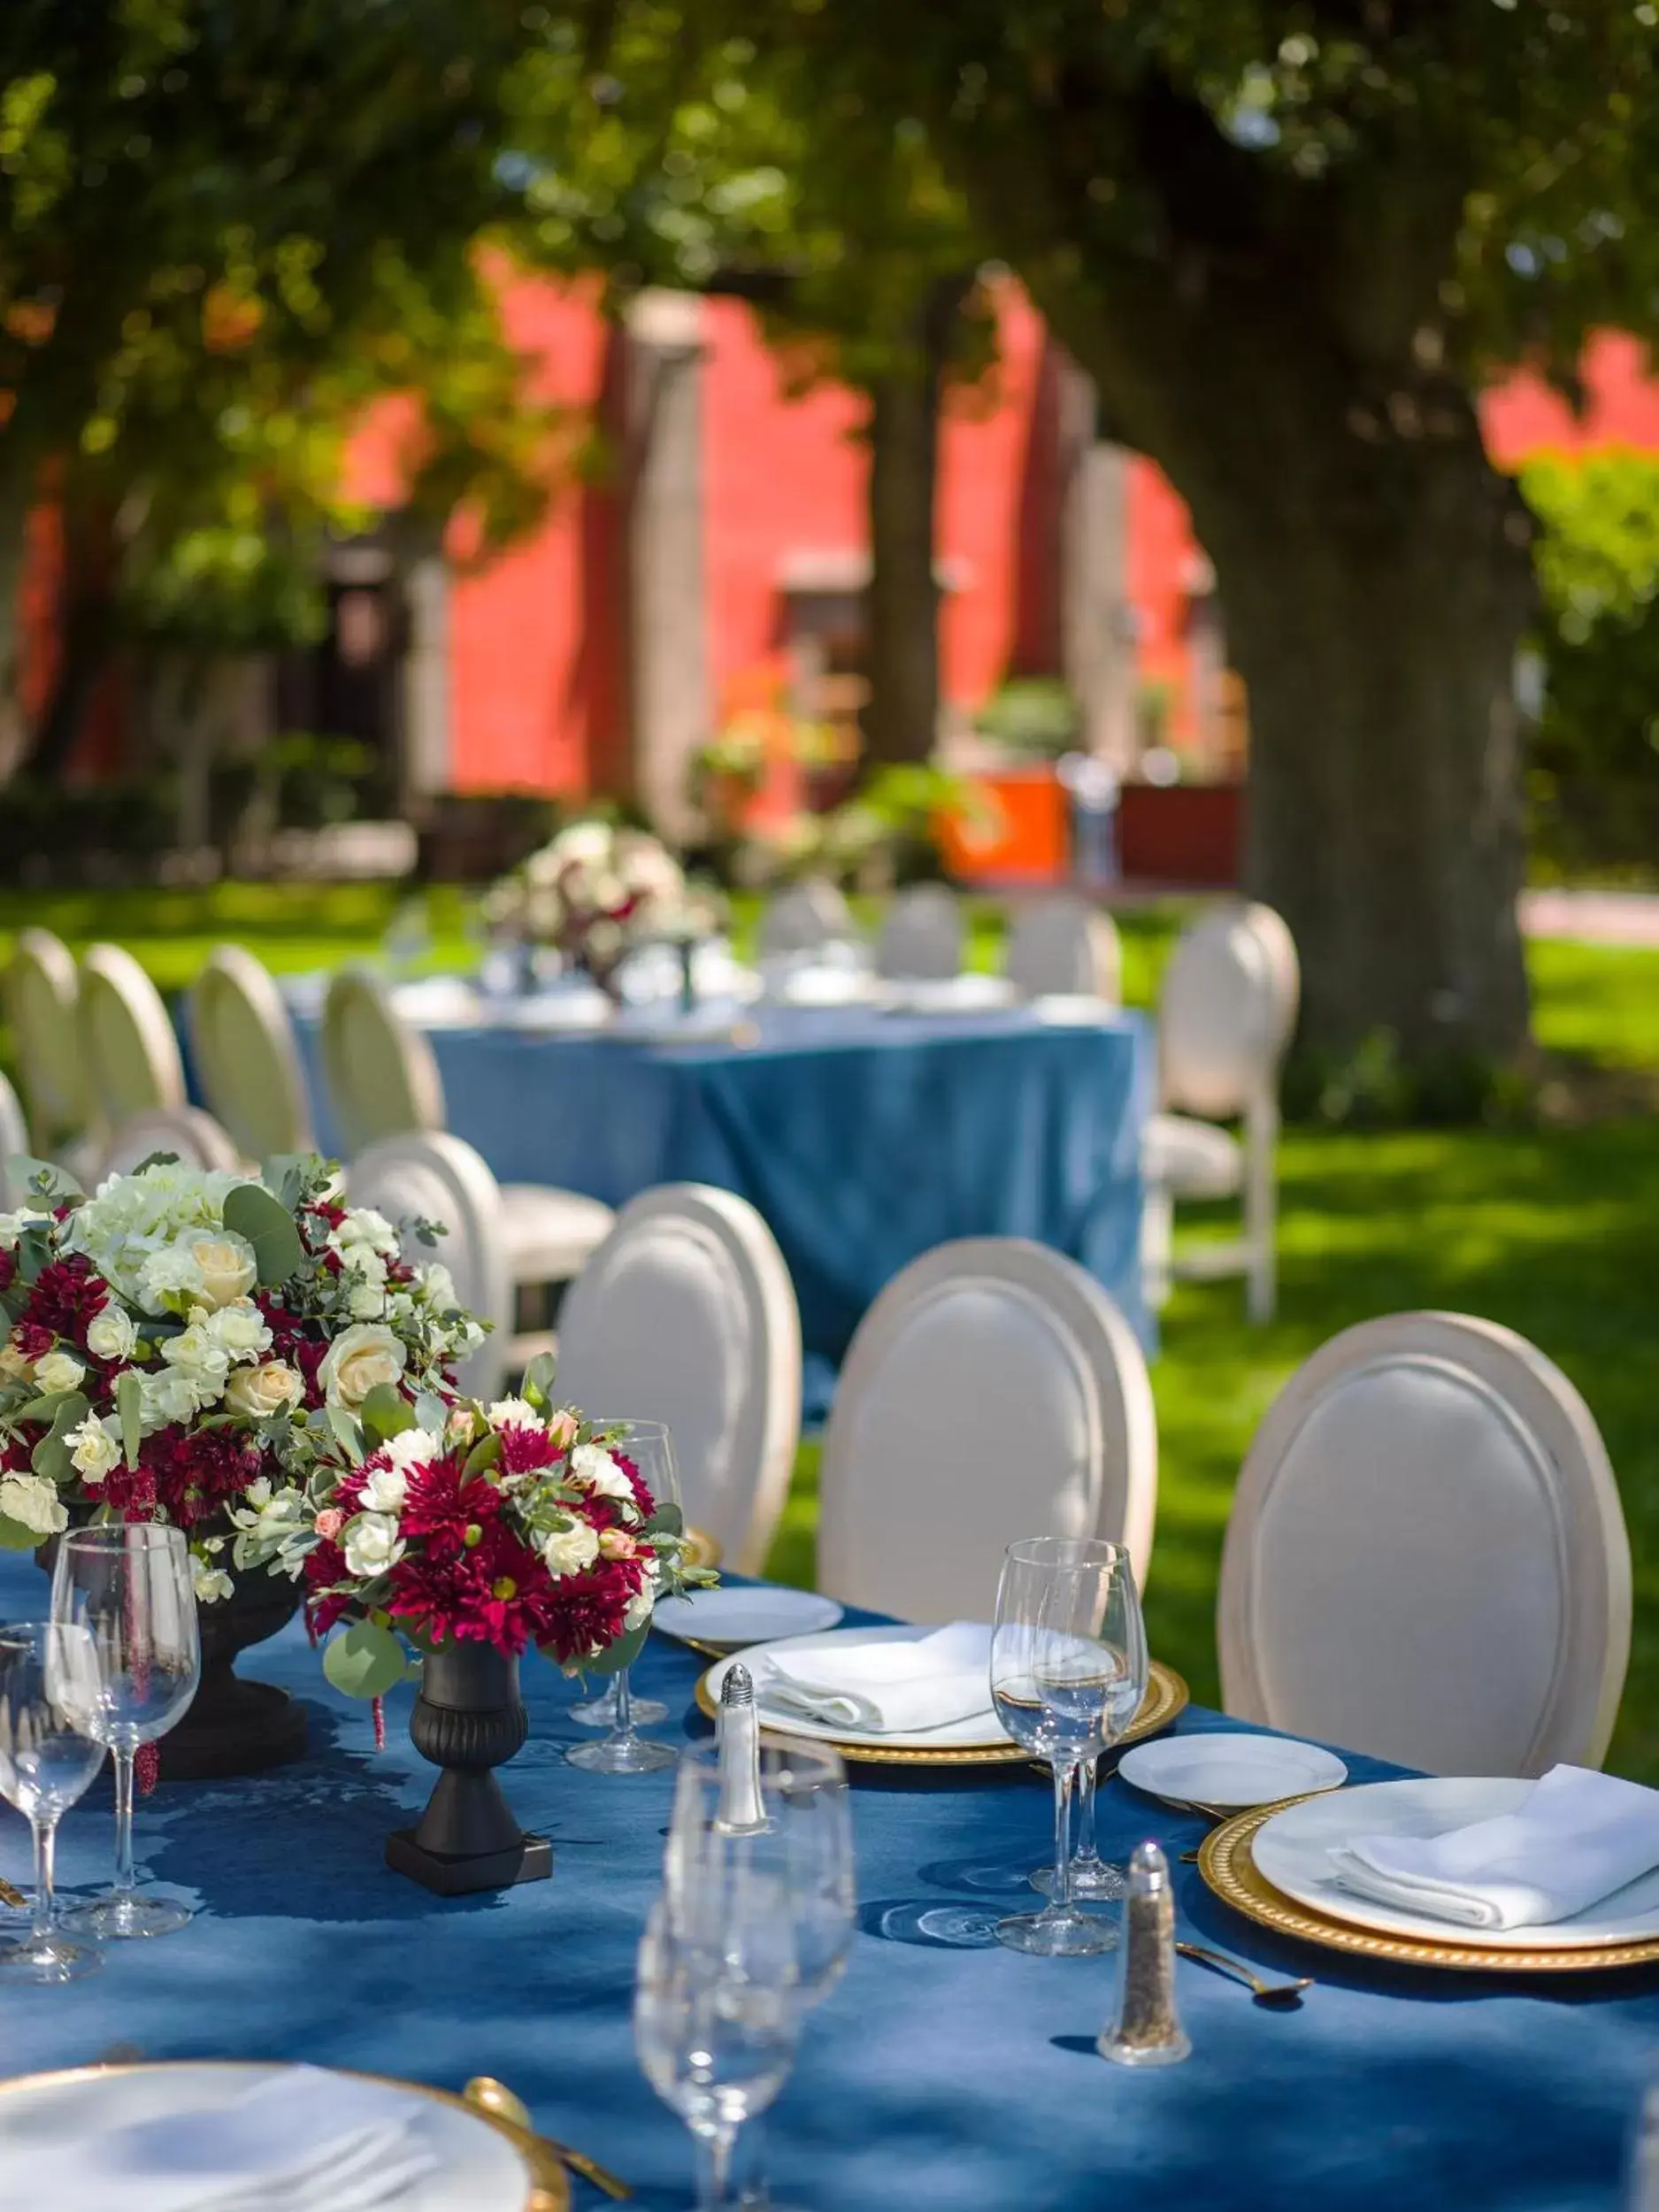 Banquet/Function facilities, Restaurant/Places to Eat in Fiesta Americana Hacienda Galindo Resort & Spa